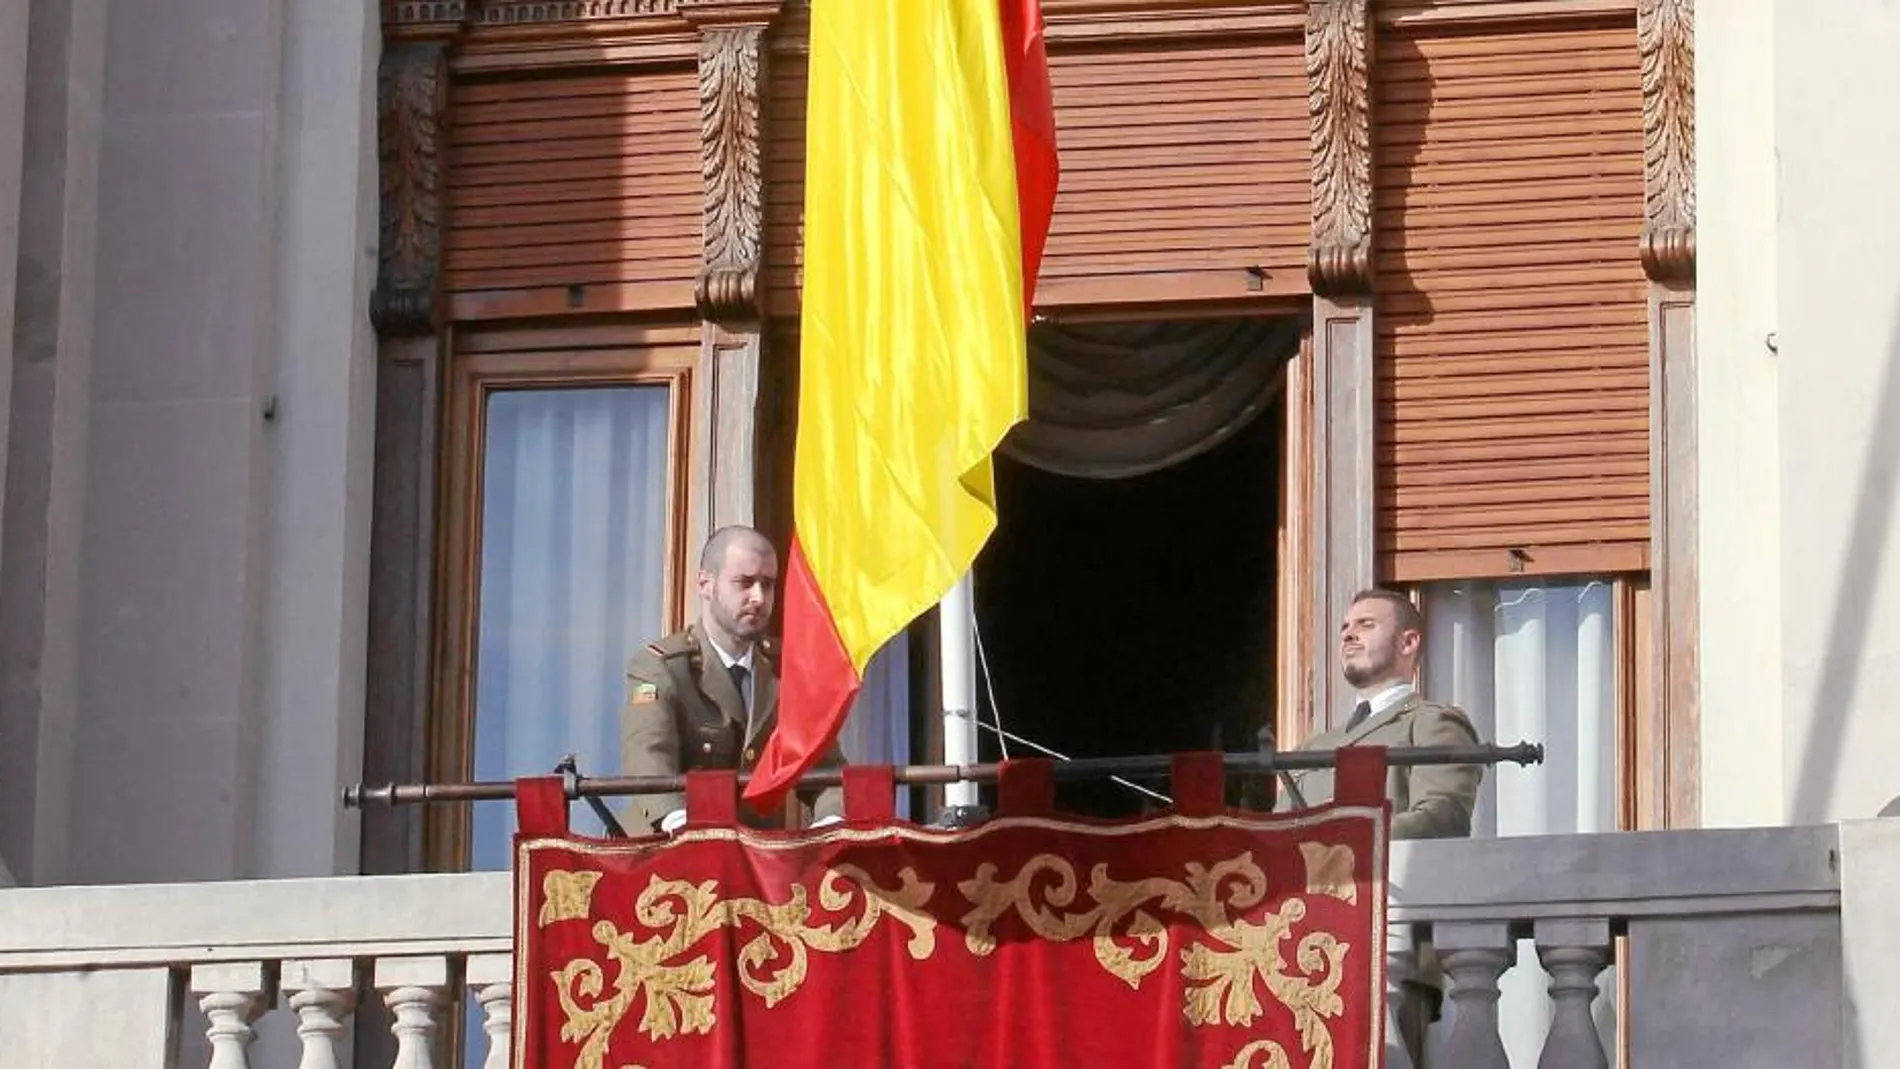 La bandera española ondeaba ayer en el Palacio de Capitanía de Barcelona